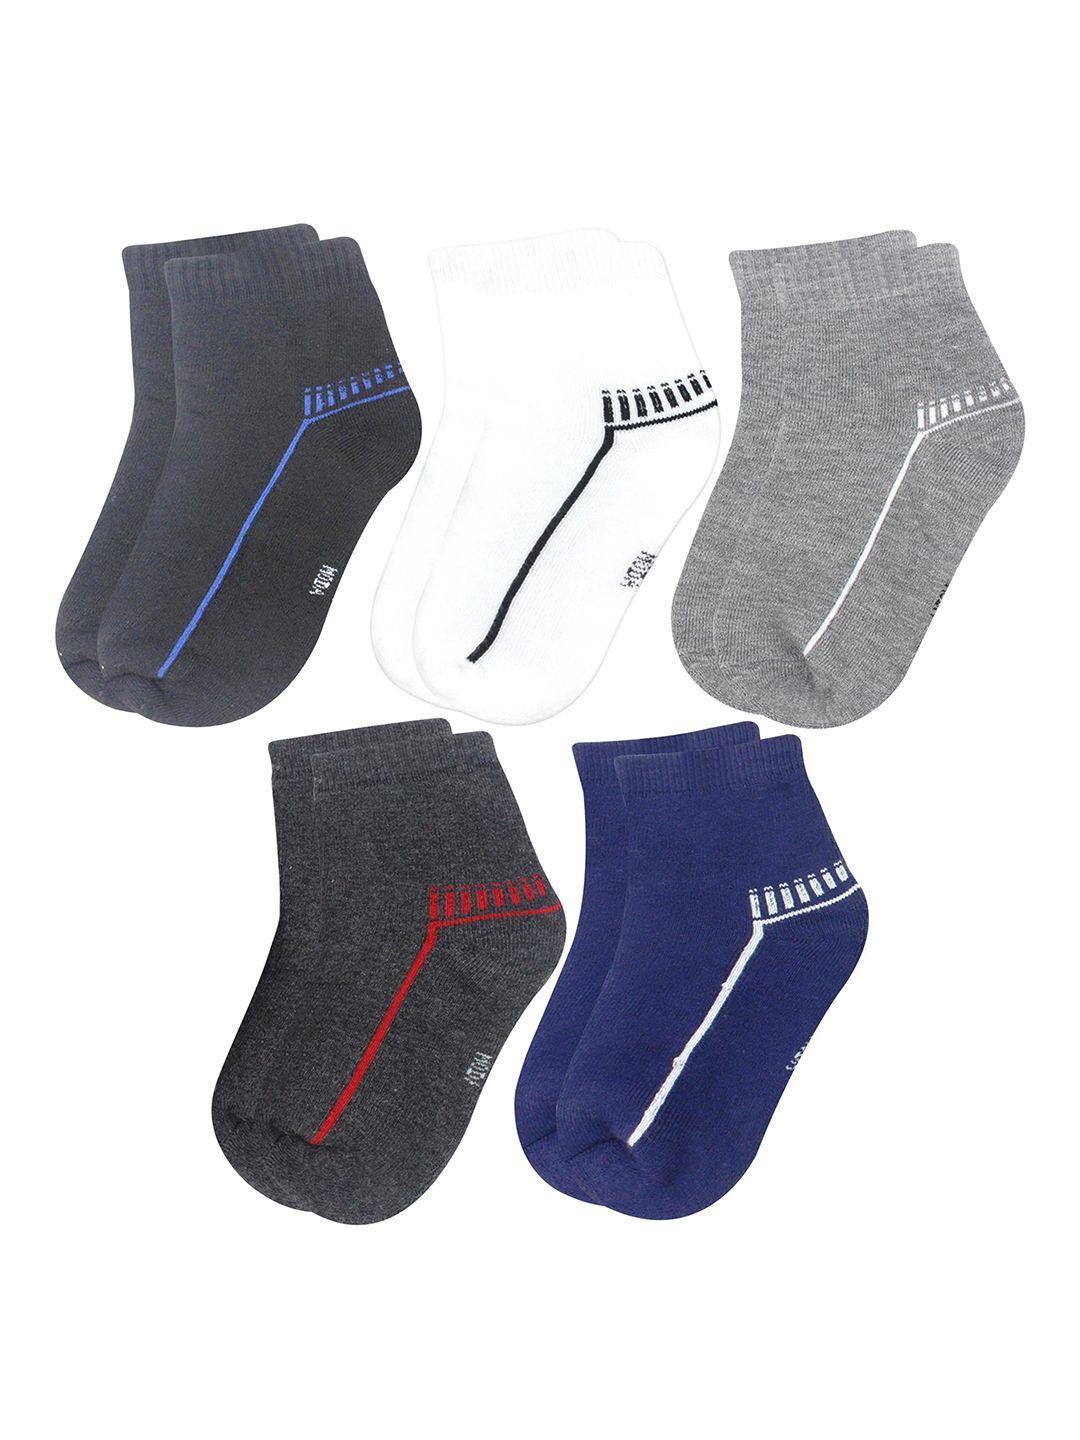 baesd infants pack of 5 patterned ankle length socks